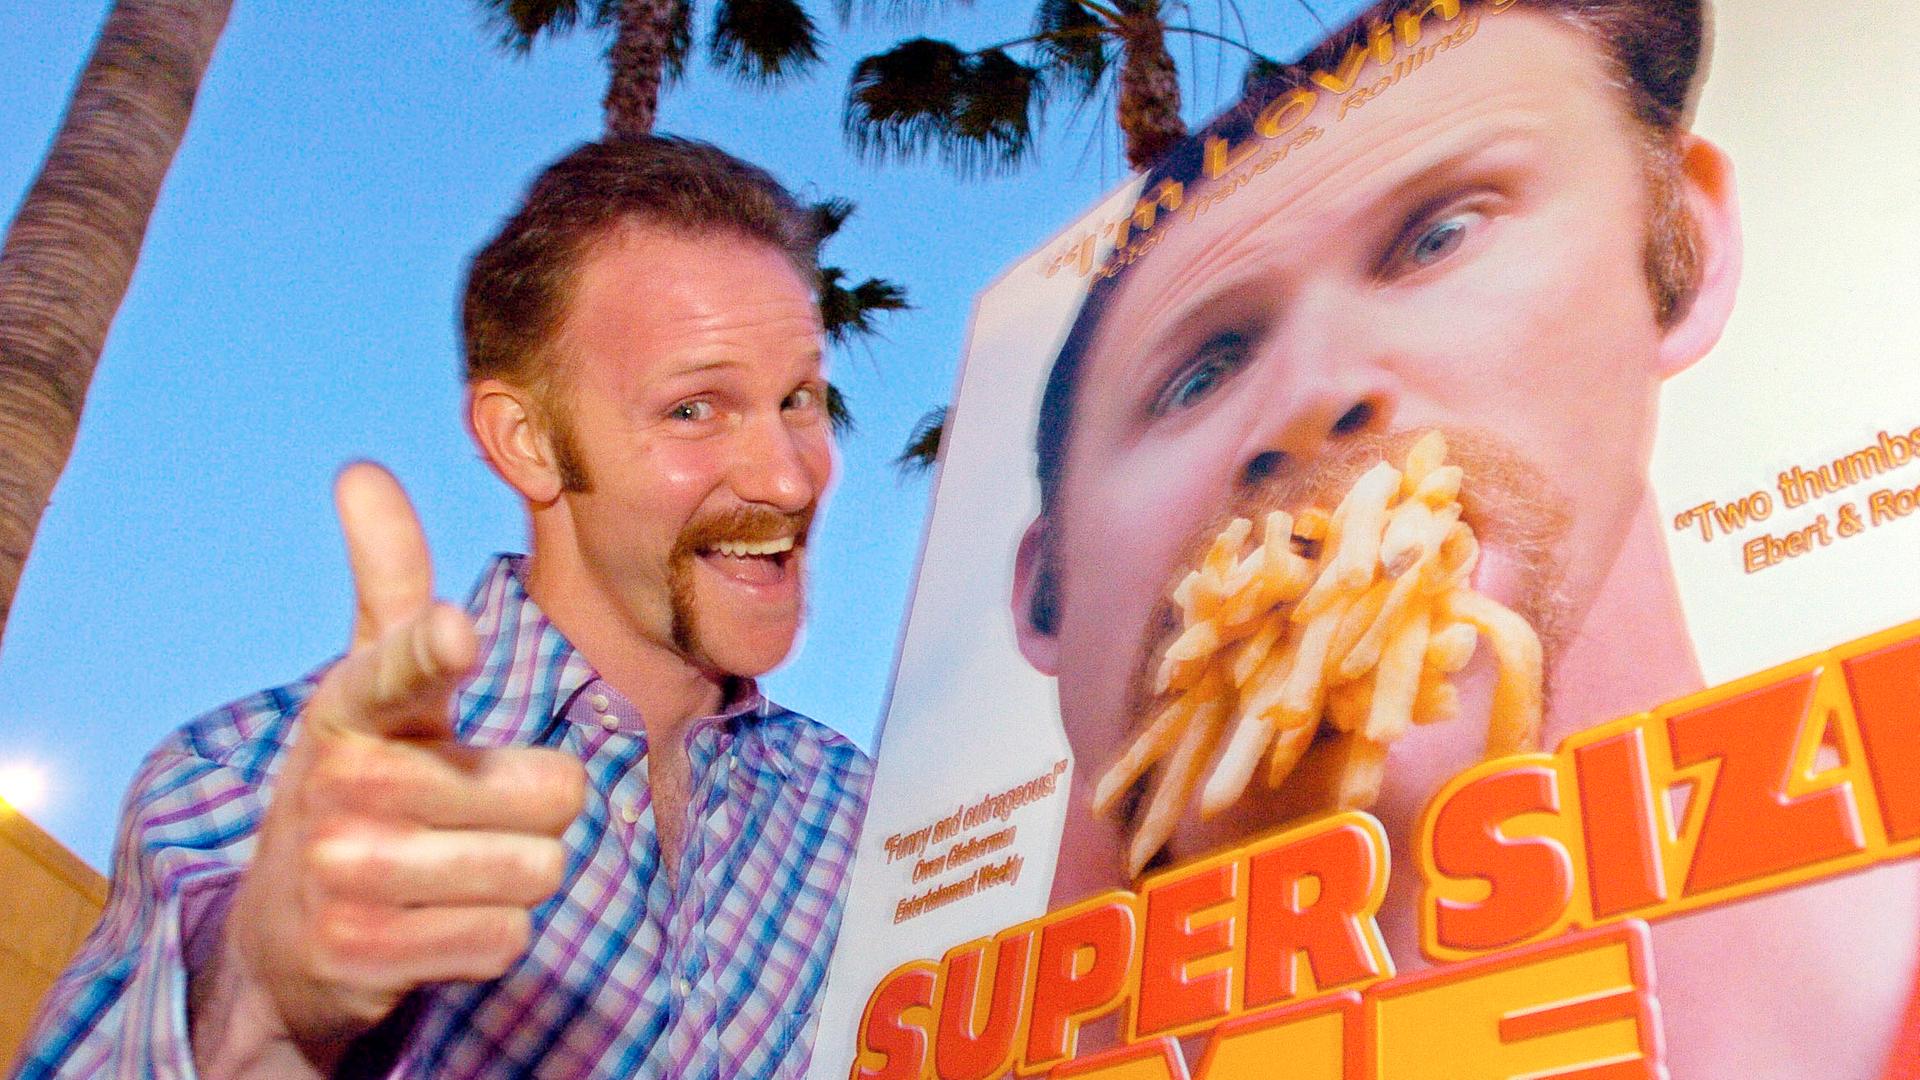 Der Regisseur und Dokumentarfilmer Morgan Spurlock bei der Premiere seines Films "Super Size Me" 2004.